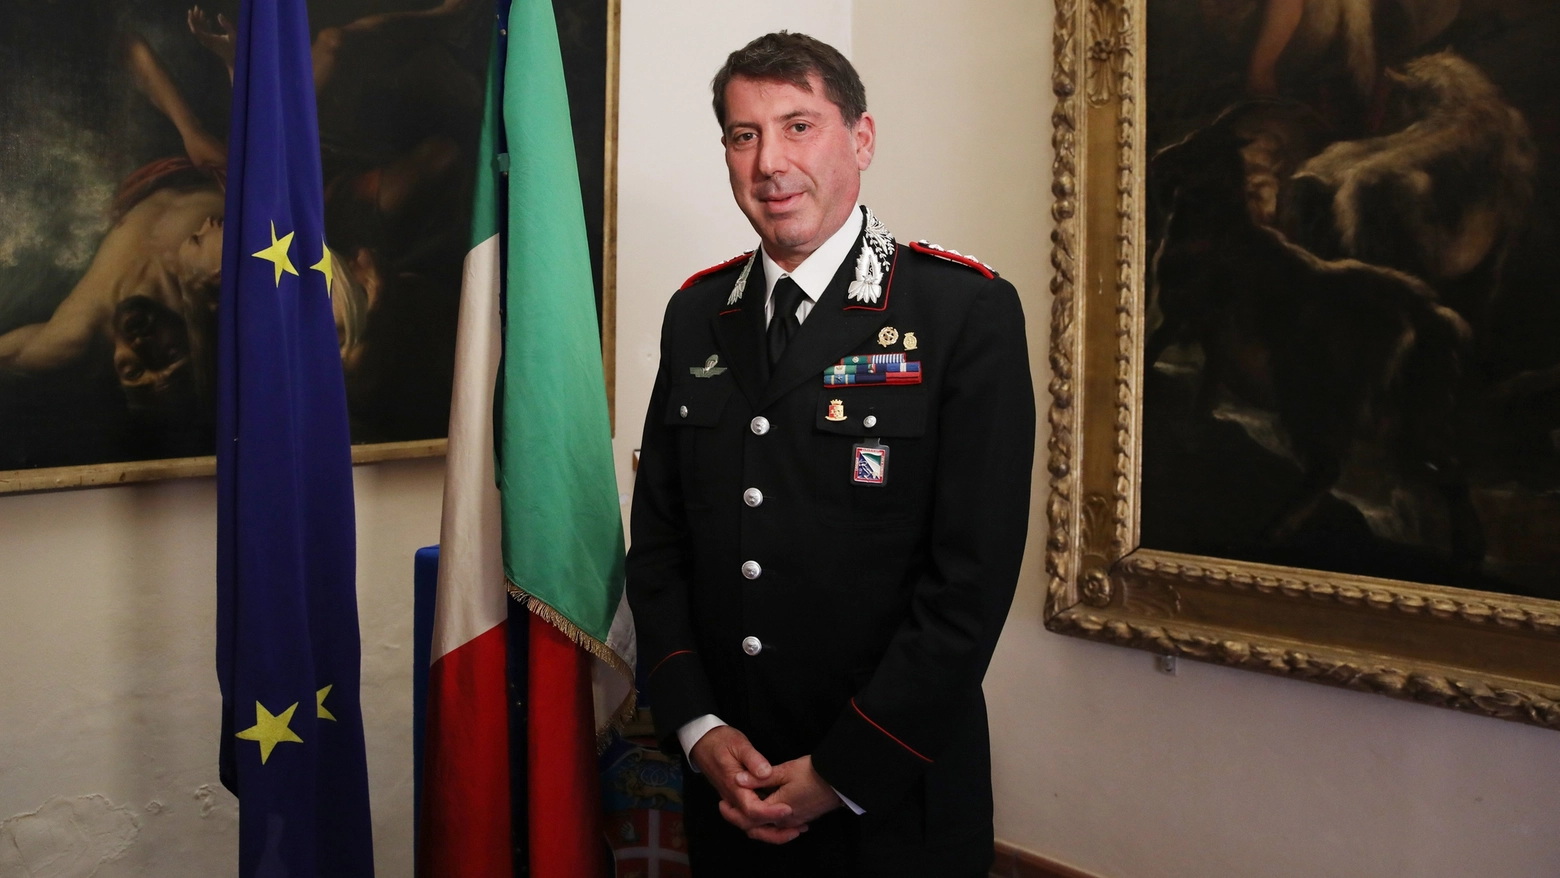 Il colonnello Ettore Bramato, il nuovo comandante provinciale dei carabinieri si presenta a Bologna (foto Schicchi)